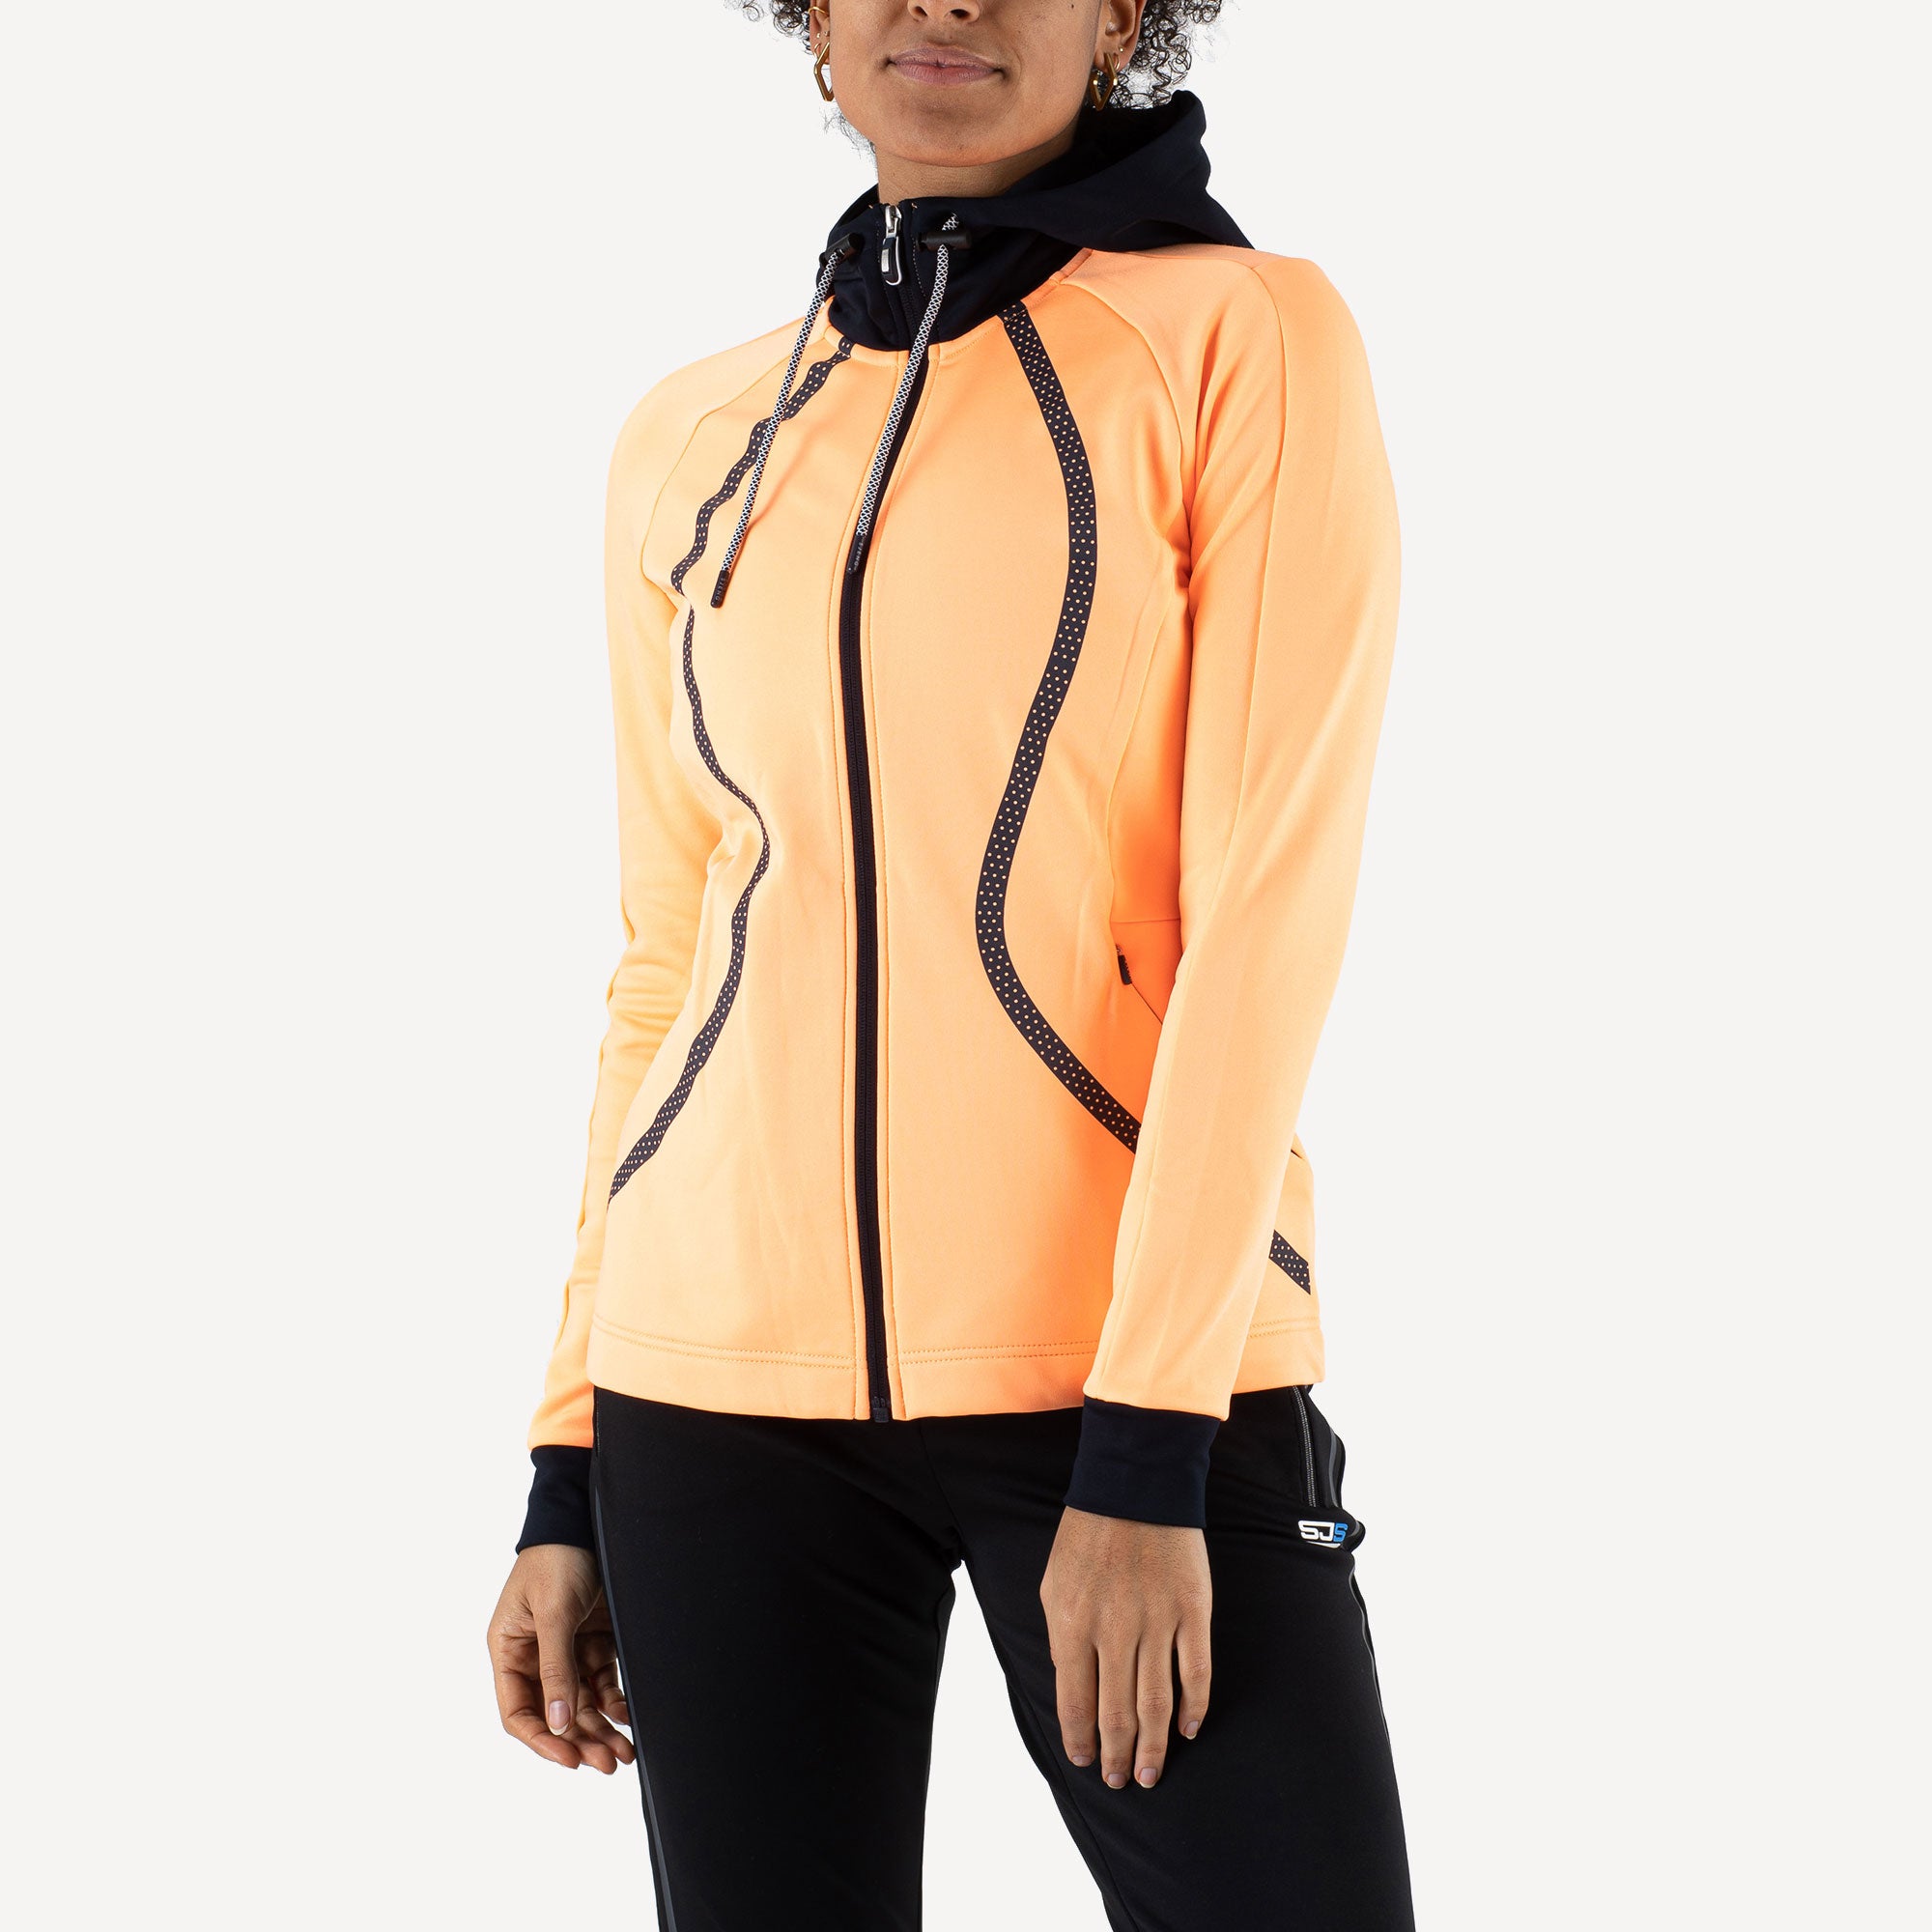 Sjeng Sports Giolla Women's Hooded Tennis Jacket Orange (1)